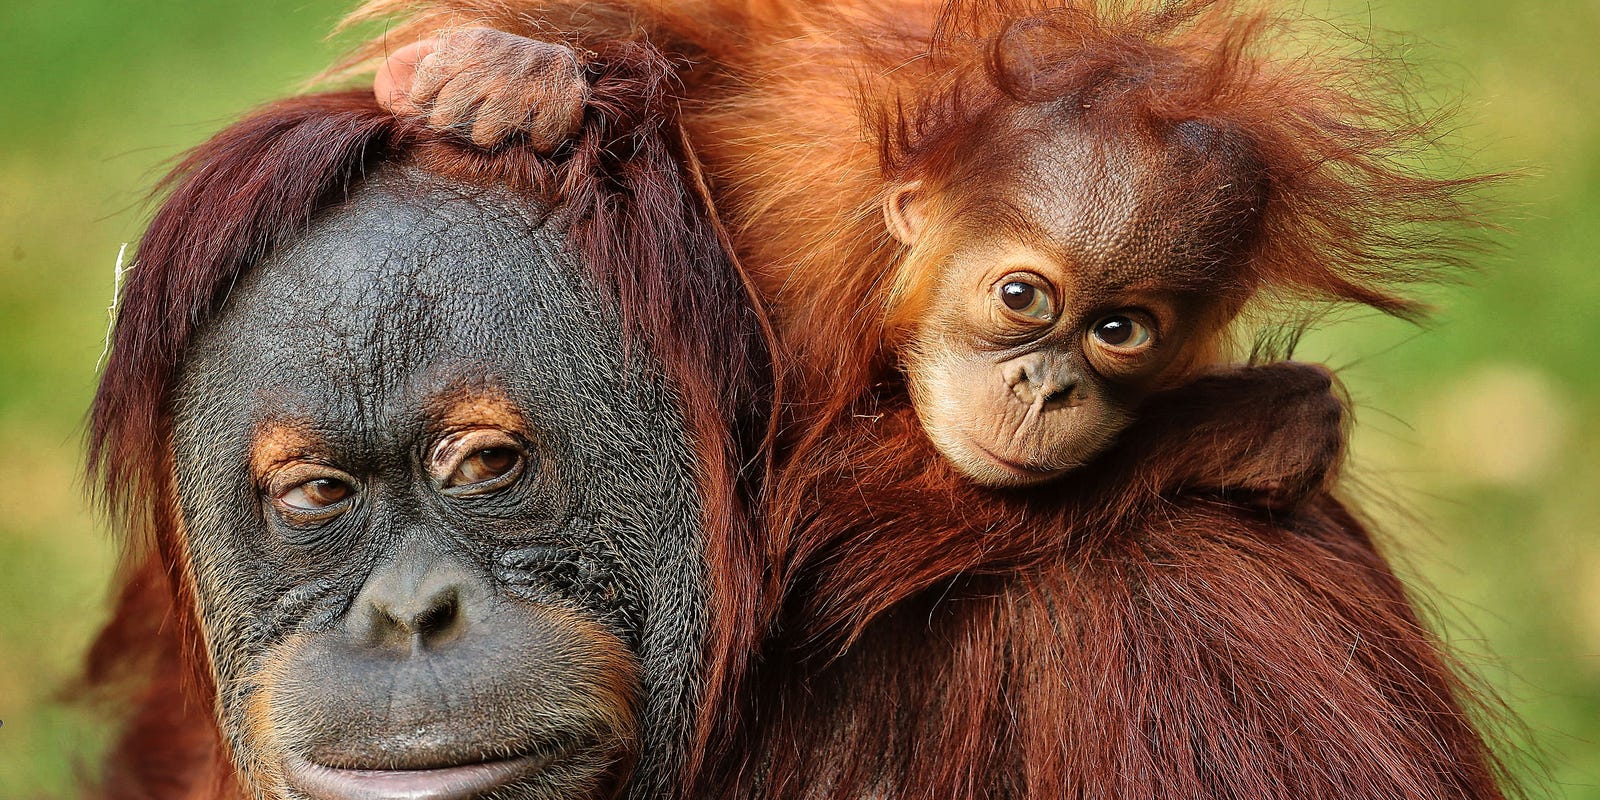 636154351637120195-11-22-16-baby-orangutan1.jpg